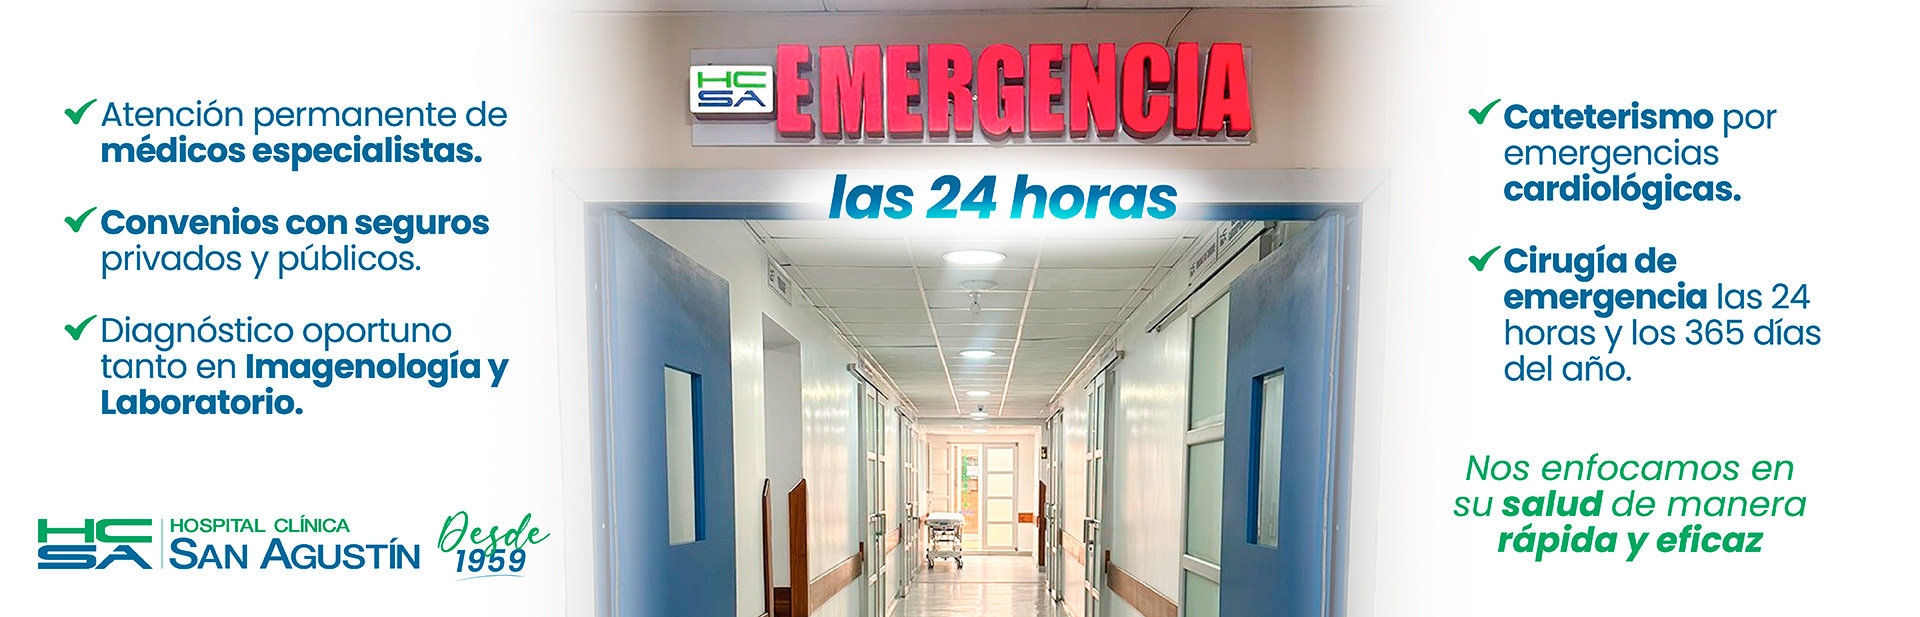 Emergencia las 24 horas | Hospital Clínica San Agustín